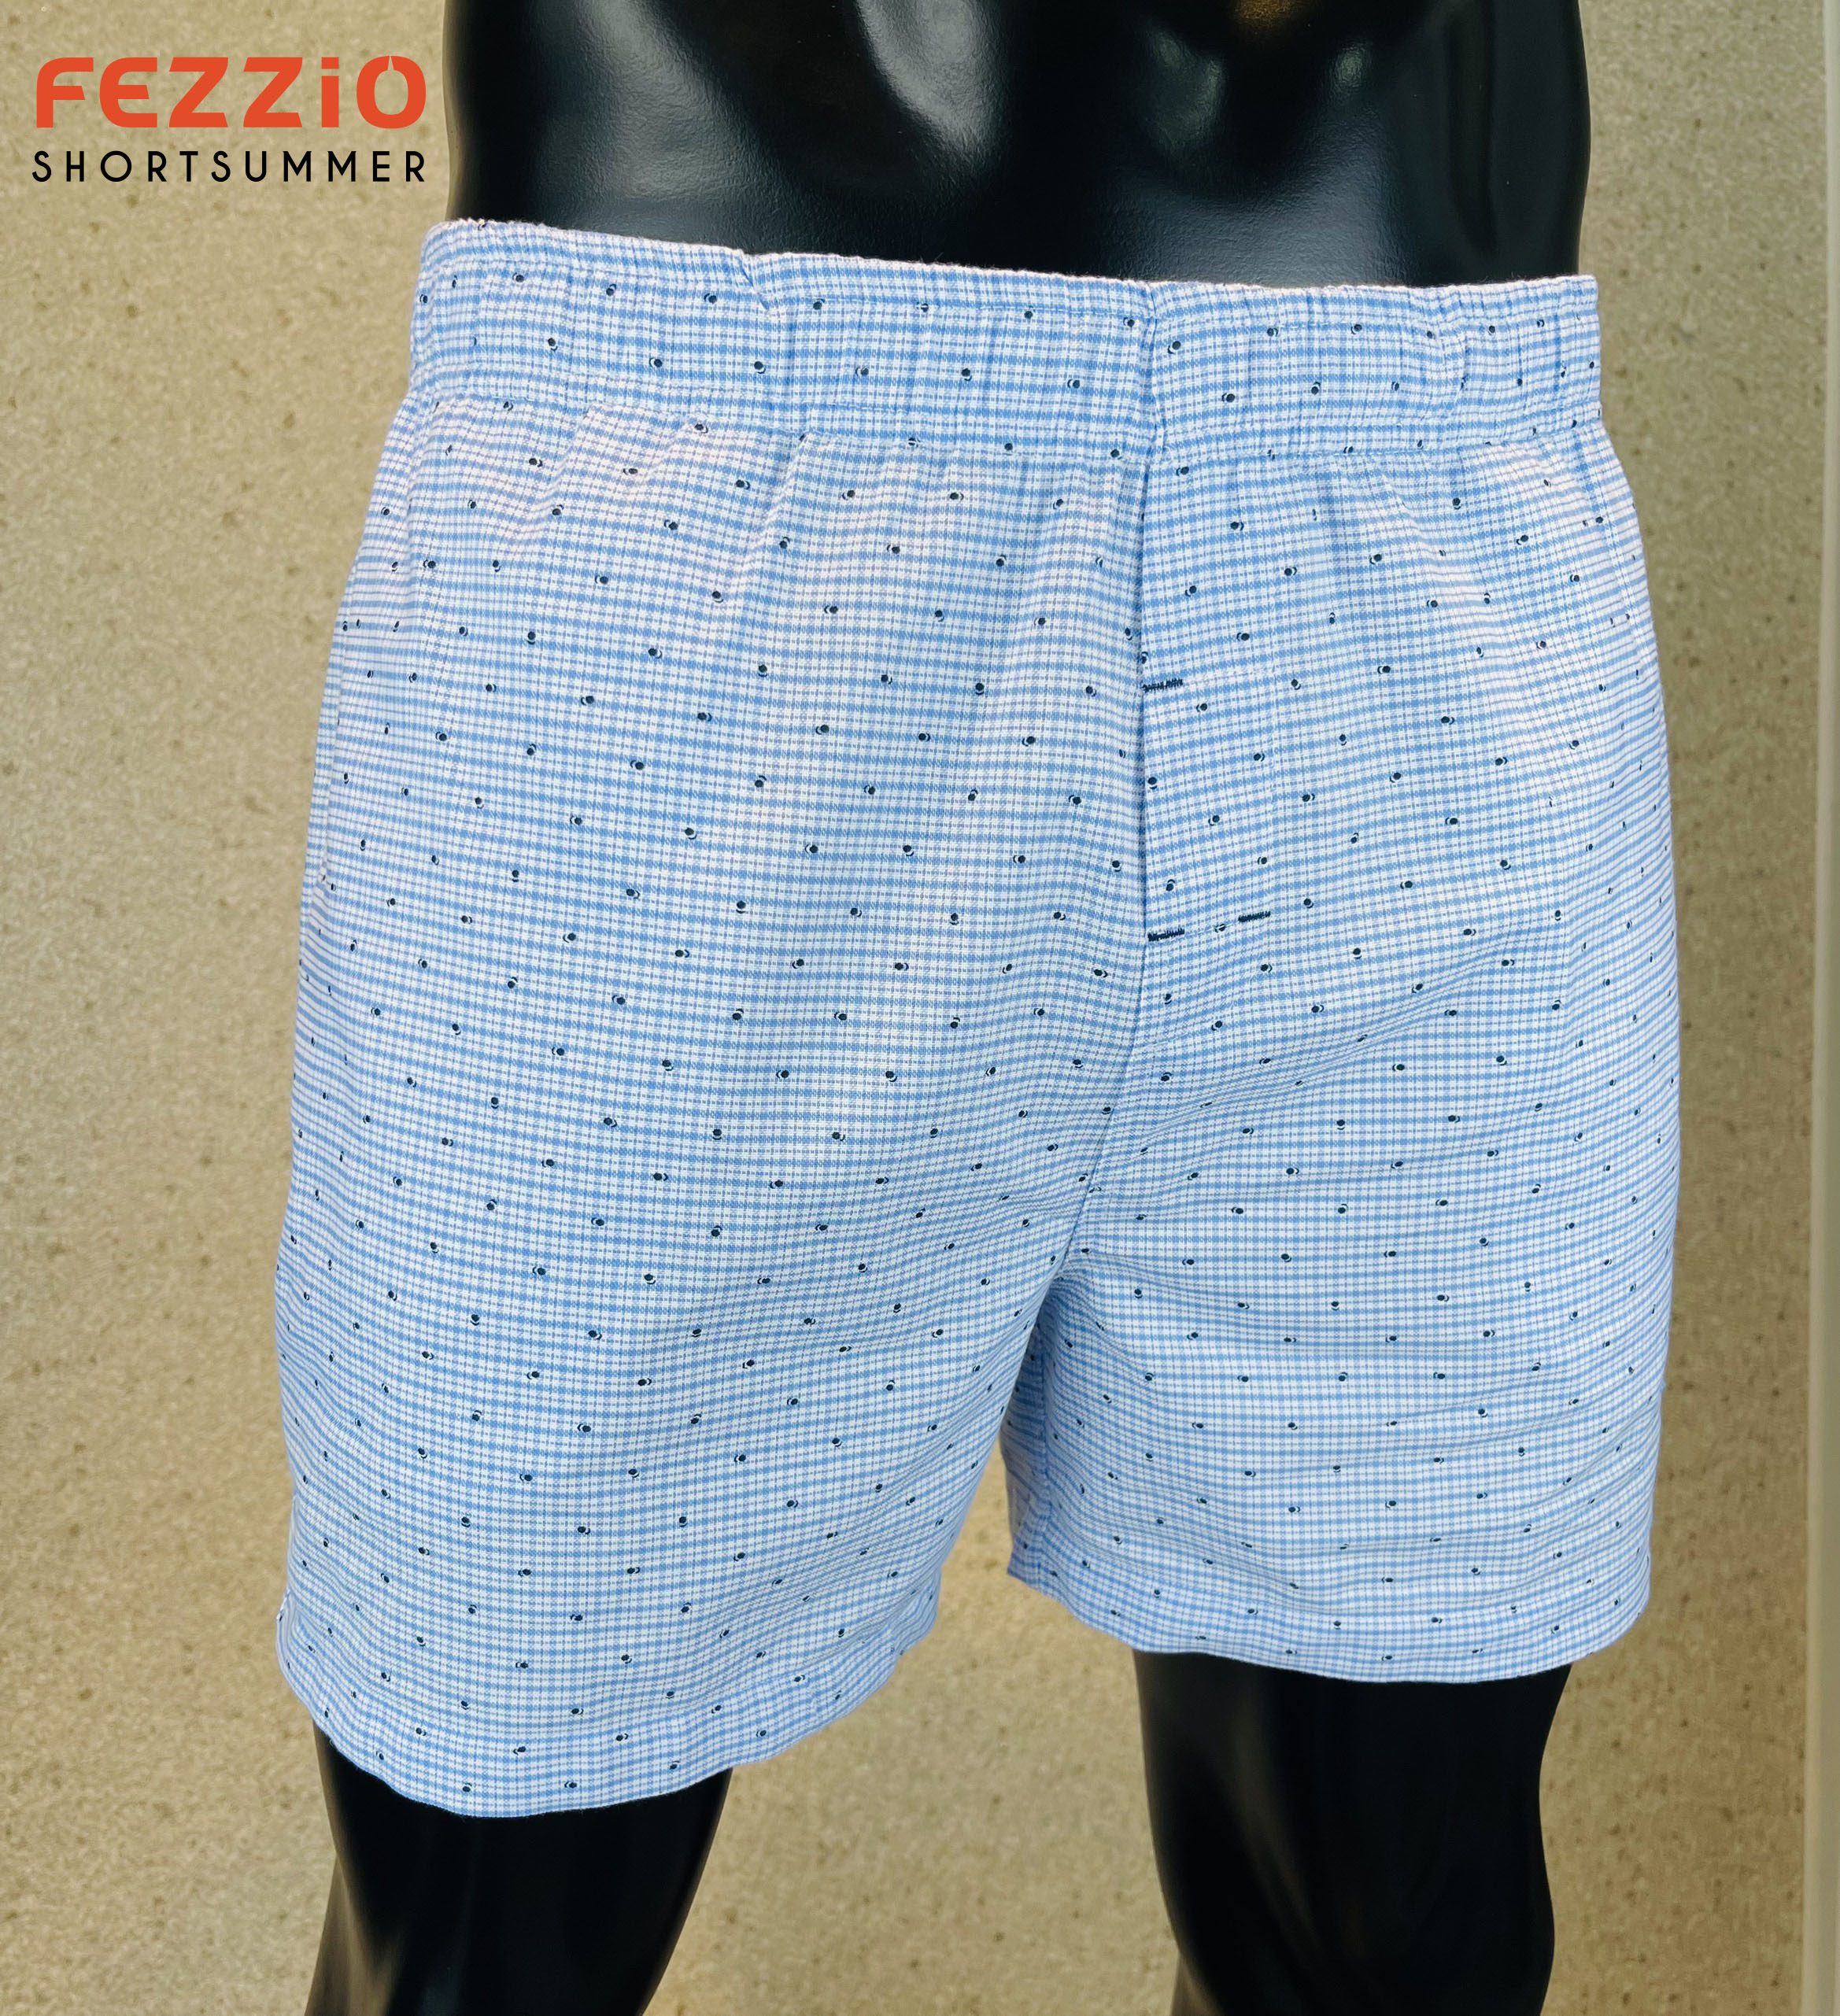 Siêu sale quần đùi nam mặc nhà xuất khẩu chất vải kate cotton 100% kiểu dáng năng động, trẻ trungthương hiệu Fezzio